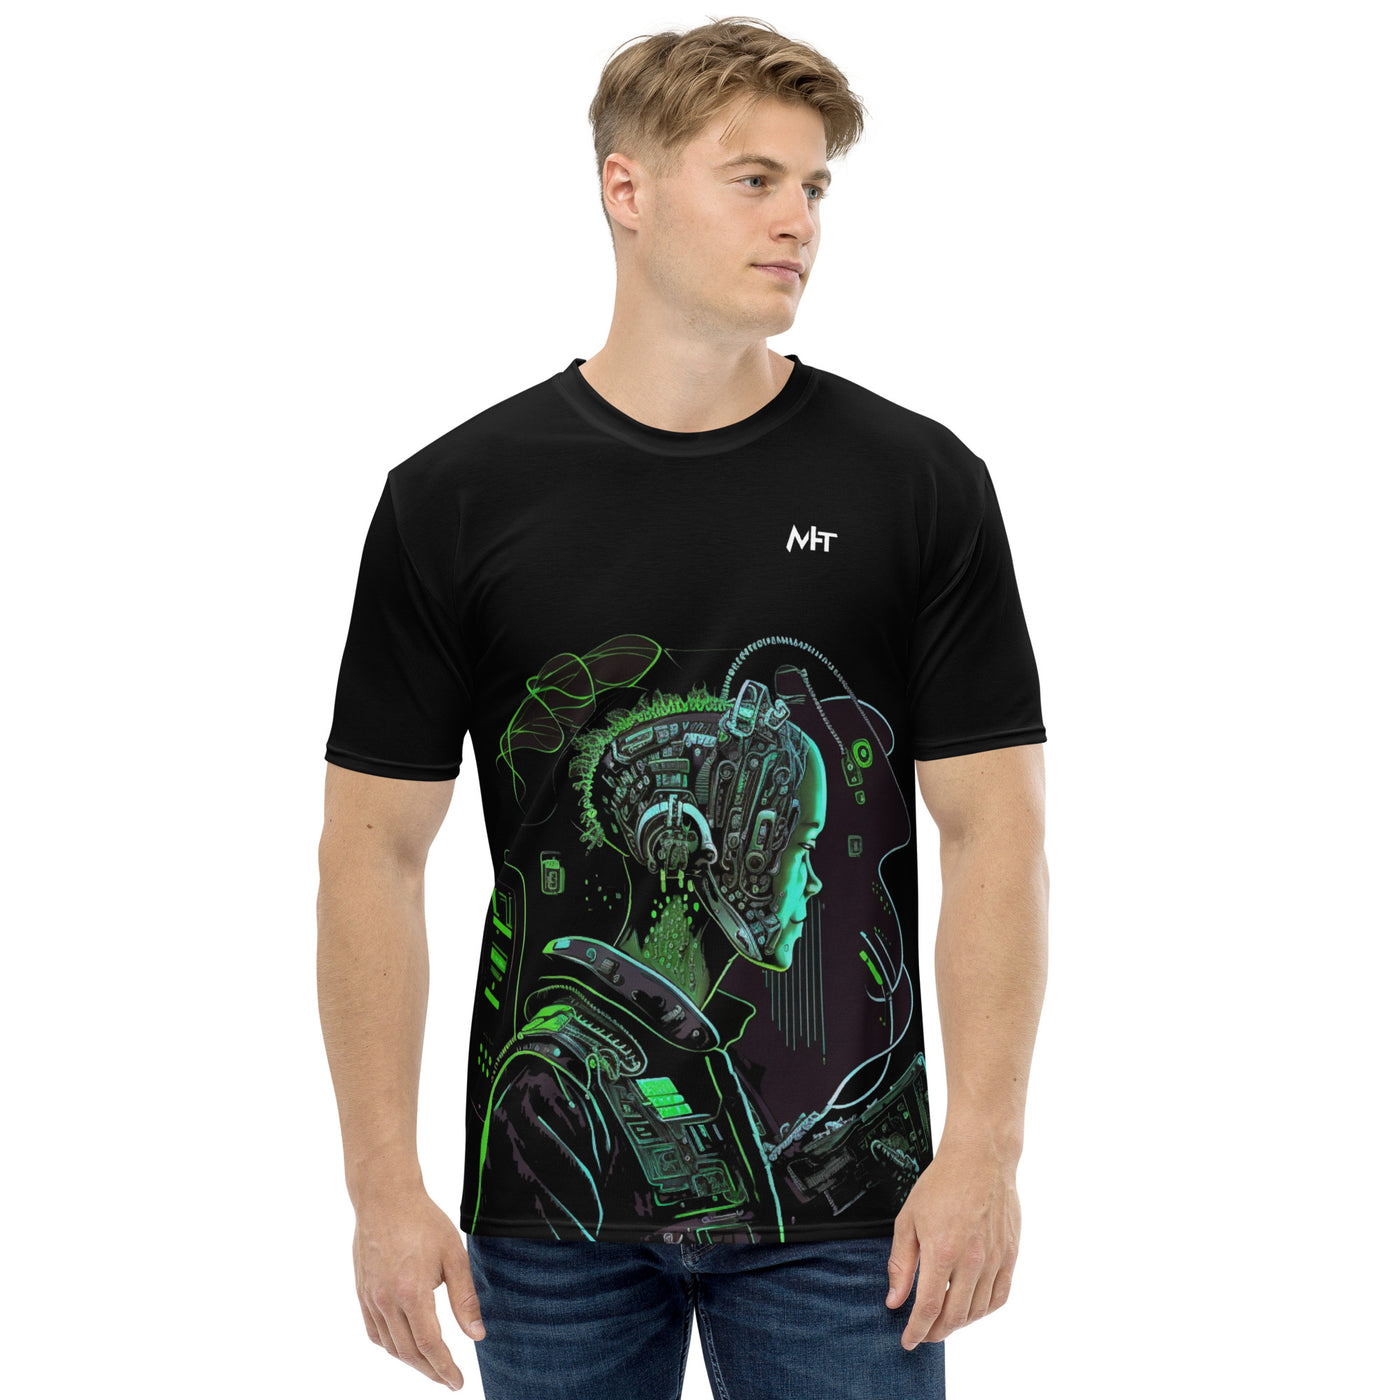 CyberWare Assassin V10 - Men's t-shirt